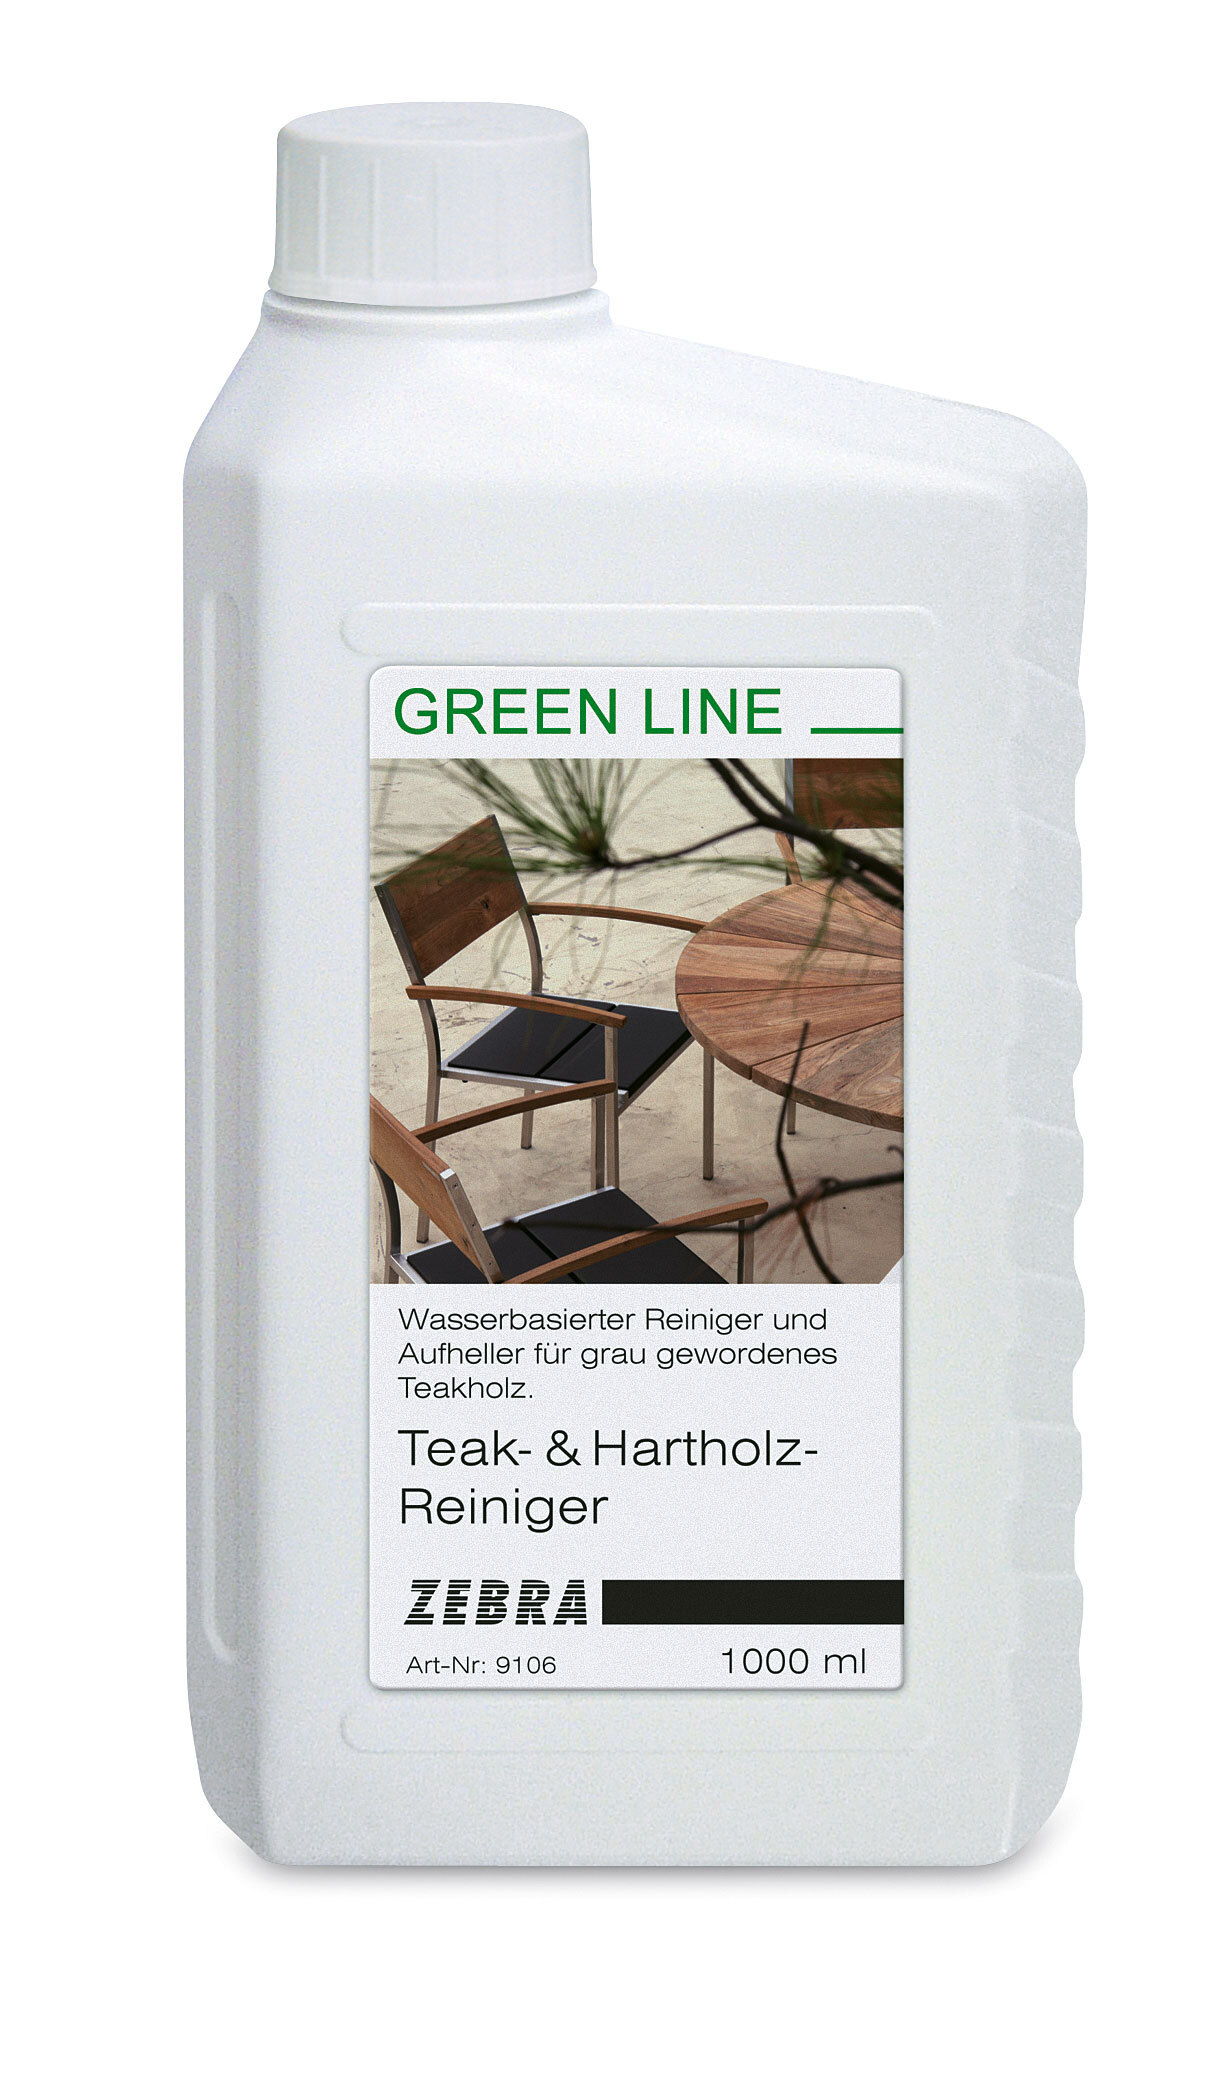 greenline by ZEBRA Reiniger GREEN LINE Teak- und Hartholz